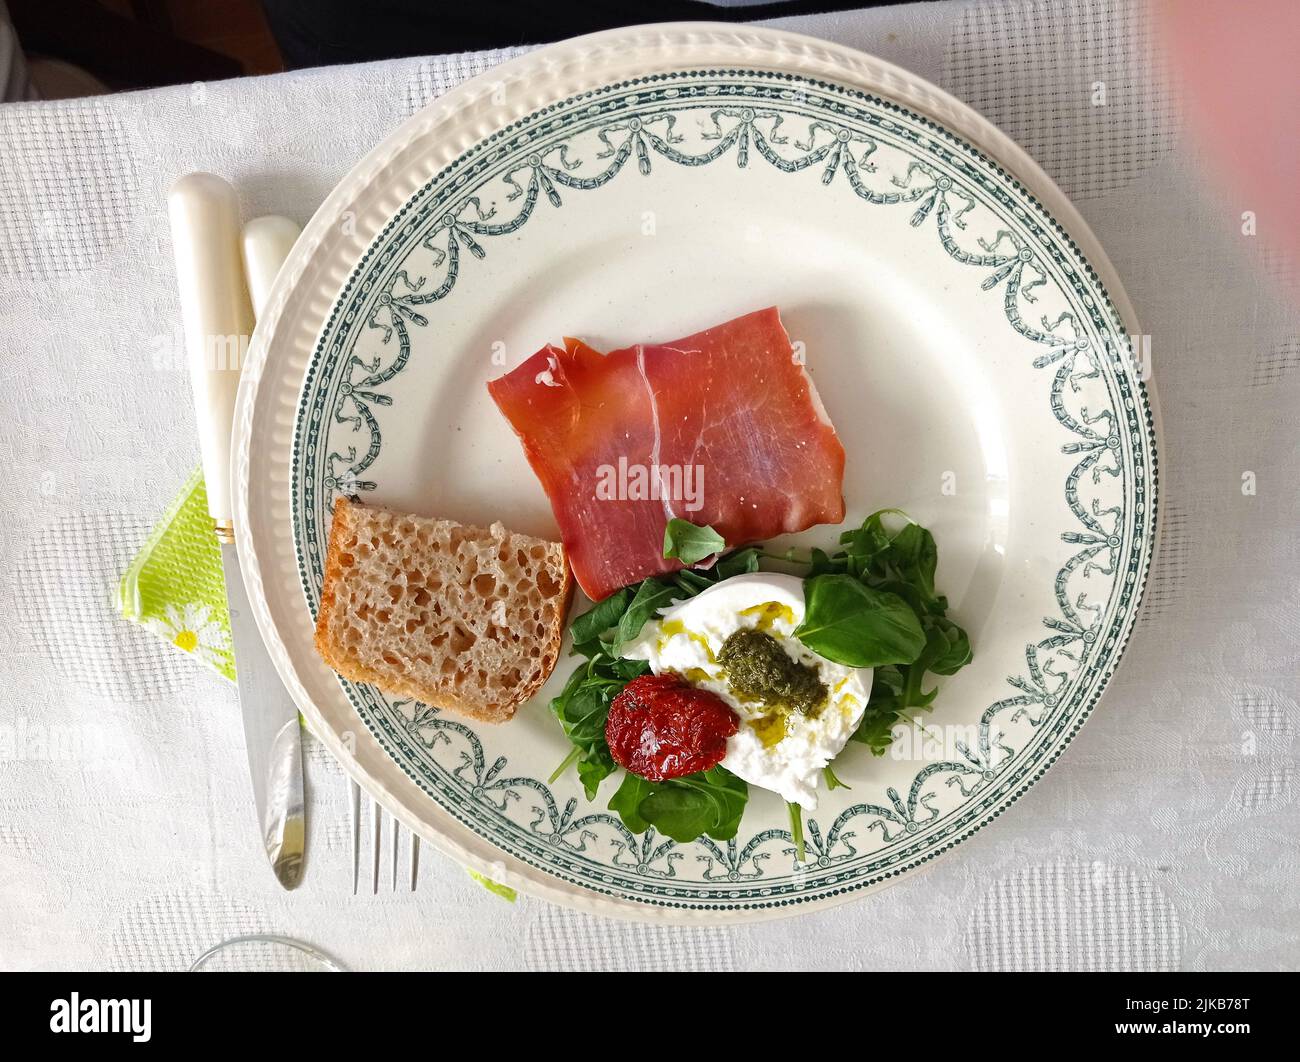 Un plat d'entrée, jambon de parme,mozzarella,tomate,menthe,pain.France Stock Photo